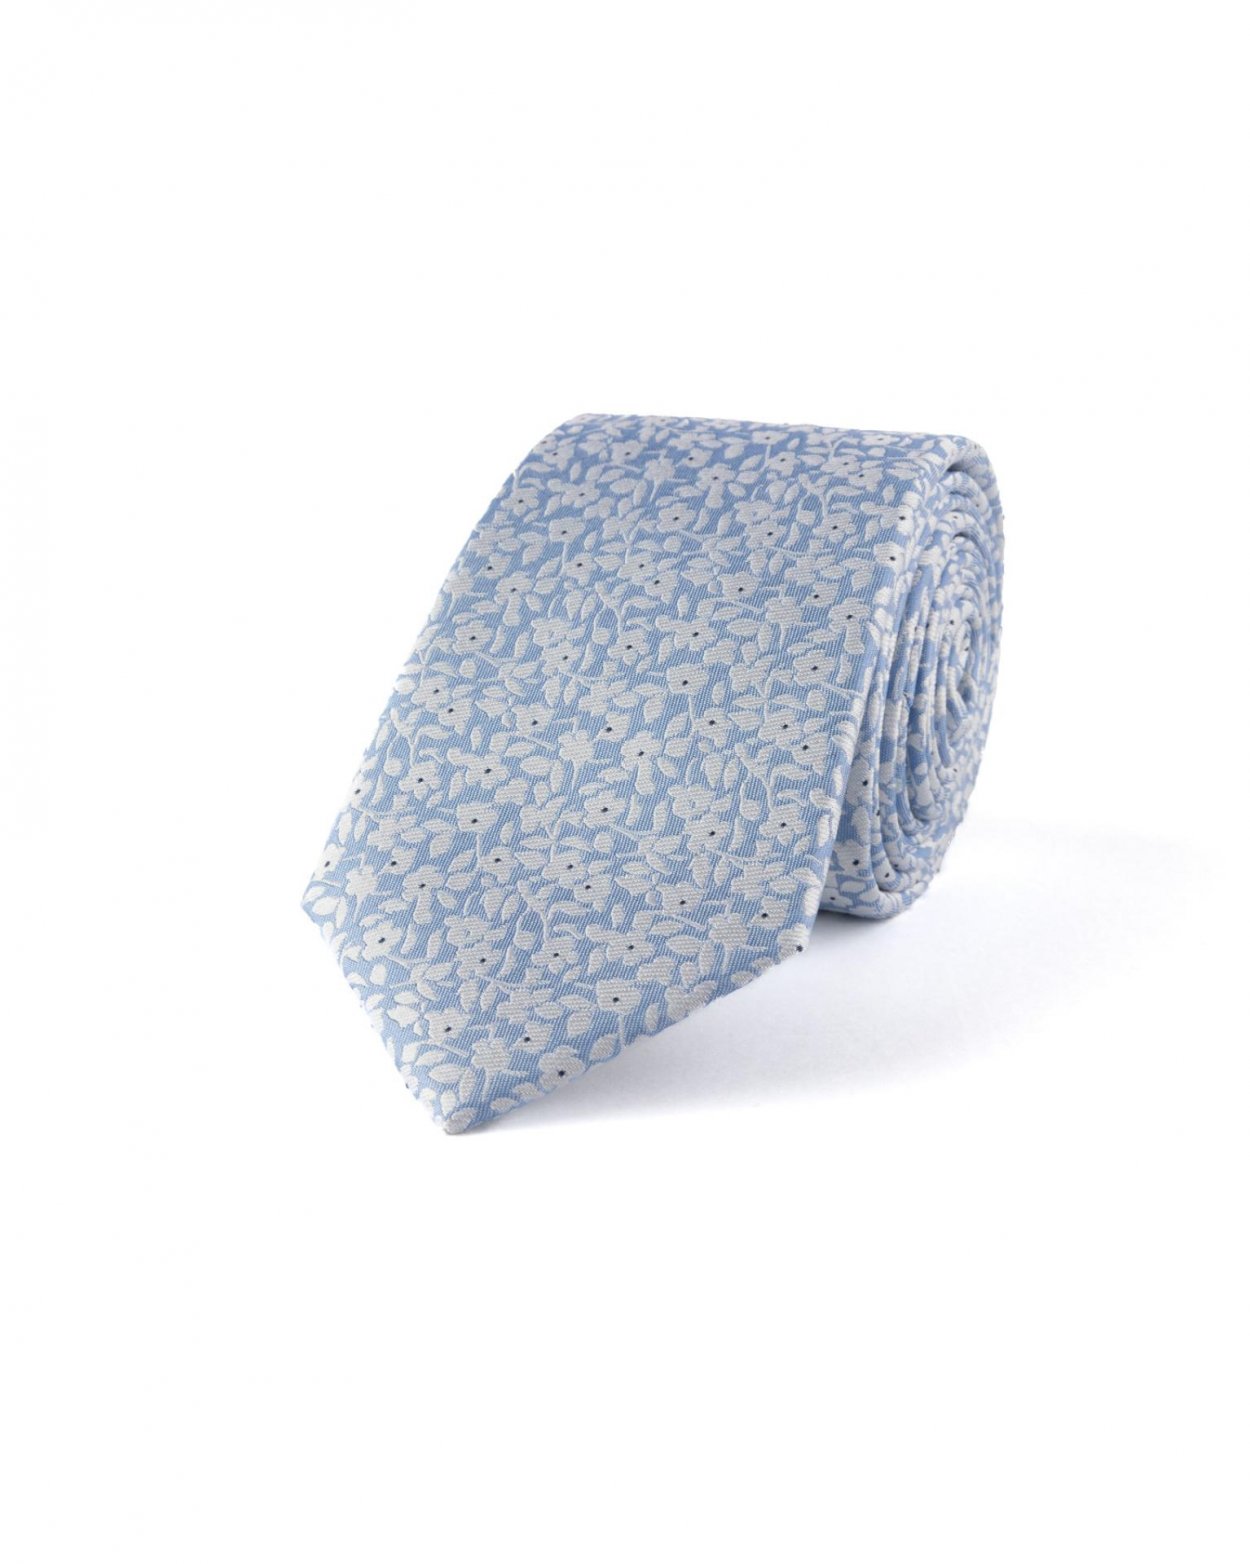 Modrá hedvábná kravata s květinovým vzorem